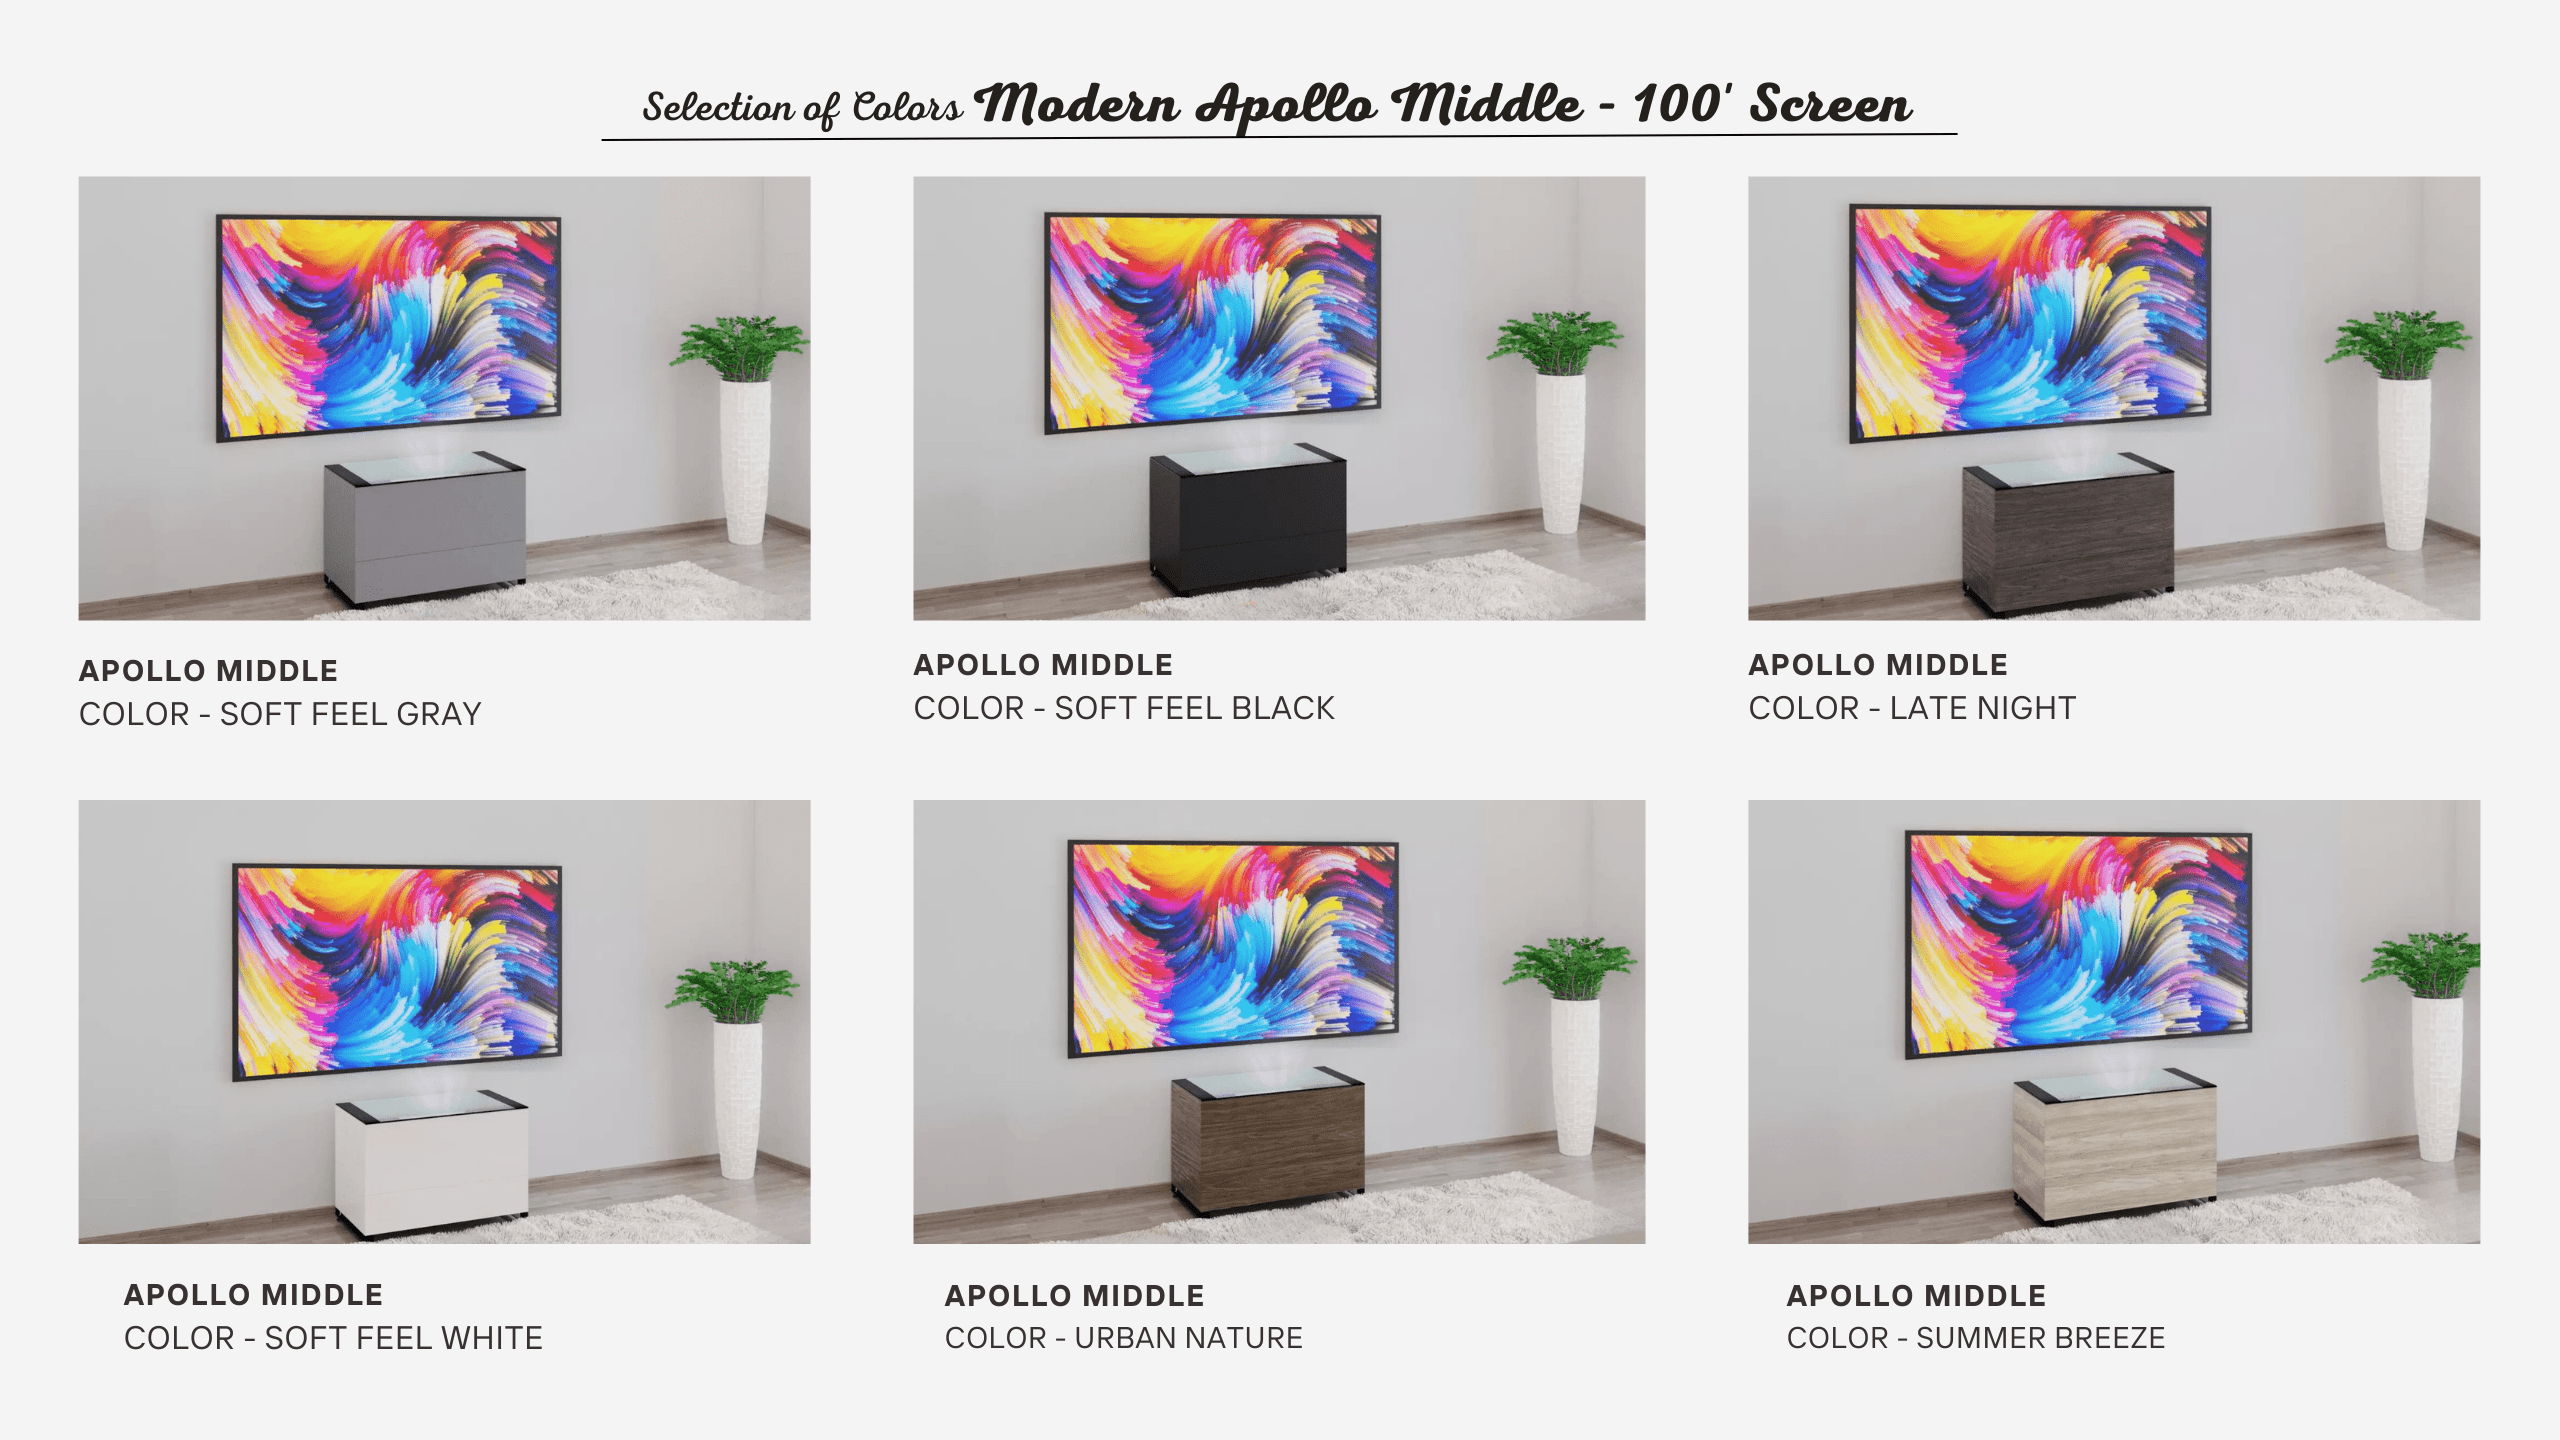 Modern Apollo Middle | 100' Screen | Small Cabinets | Aegis AV Cabinets